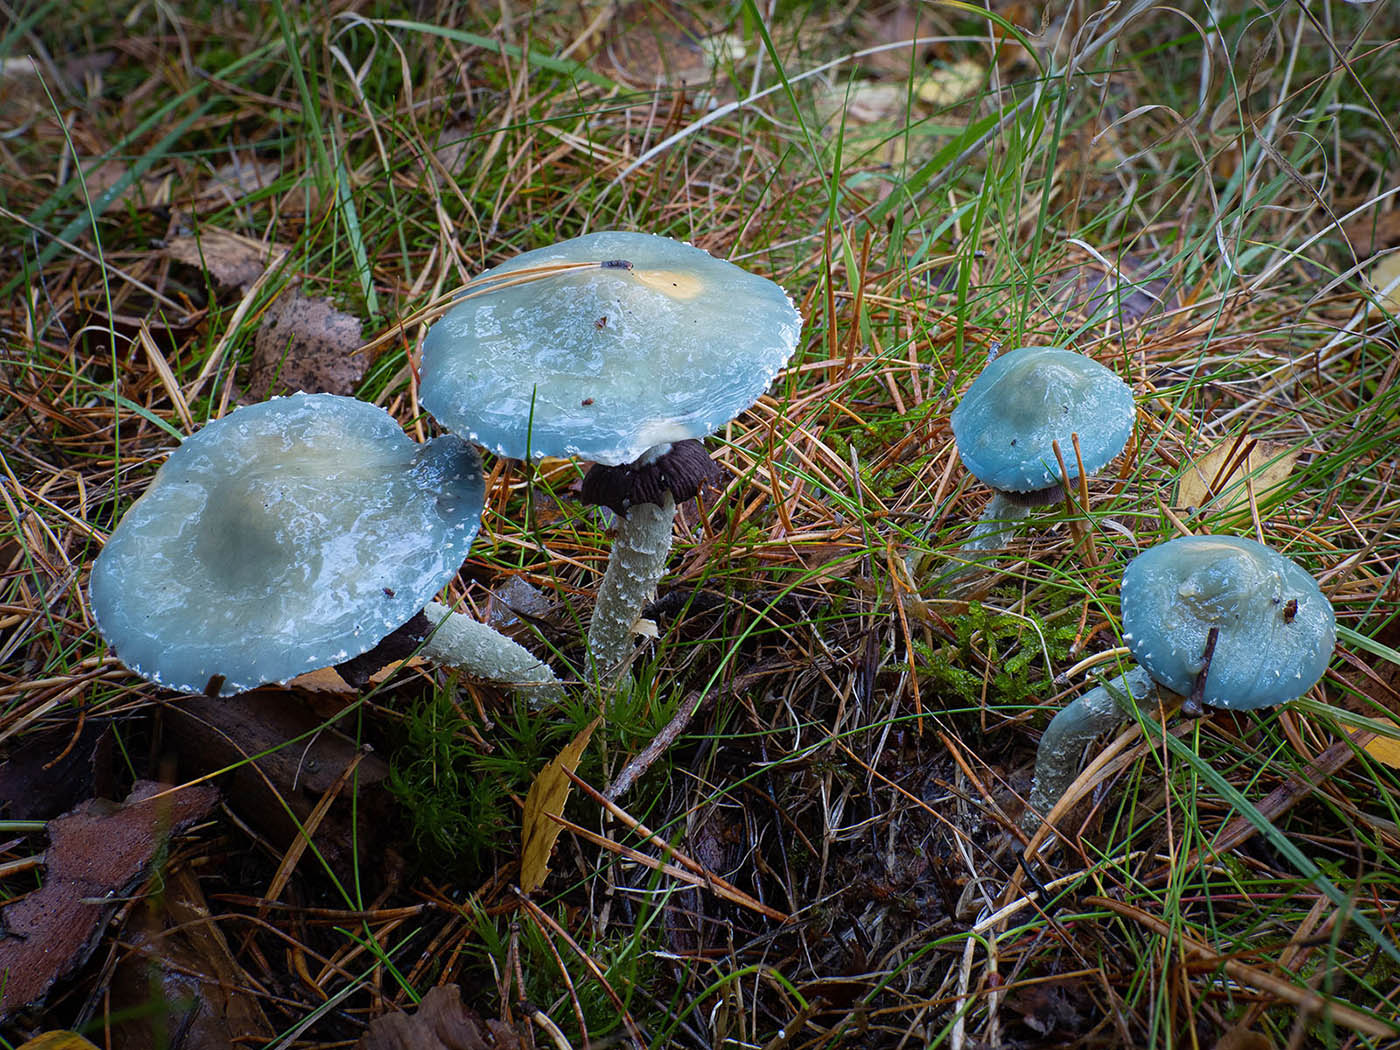 Строфария сине-зелёная (Stropharia aeruginosa)Строфария сине-зелёная (Stropharia aeruginosa) в еловом лесу, Стокгольм, октябрь 2020 года. Автор фото: Сутормина Марина